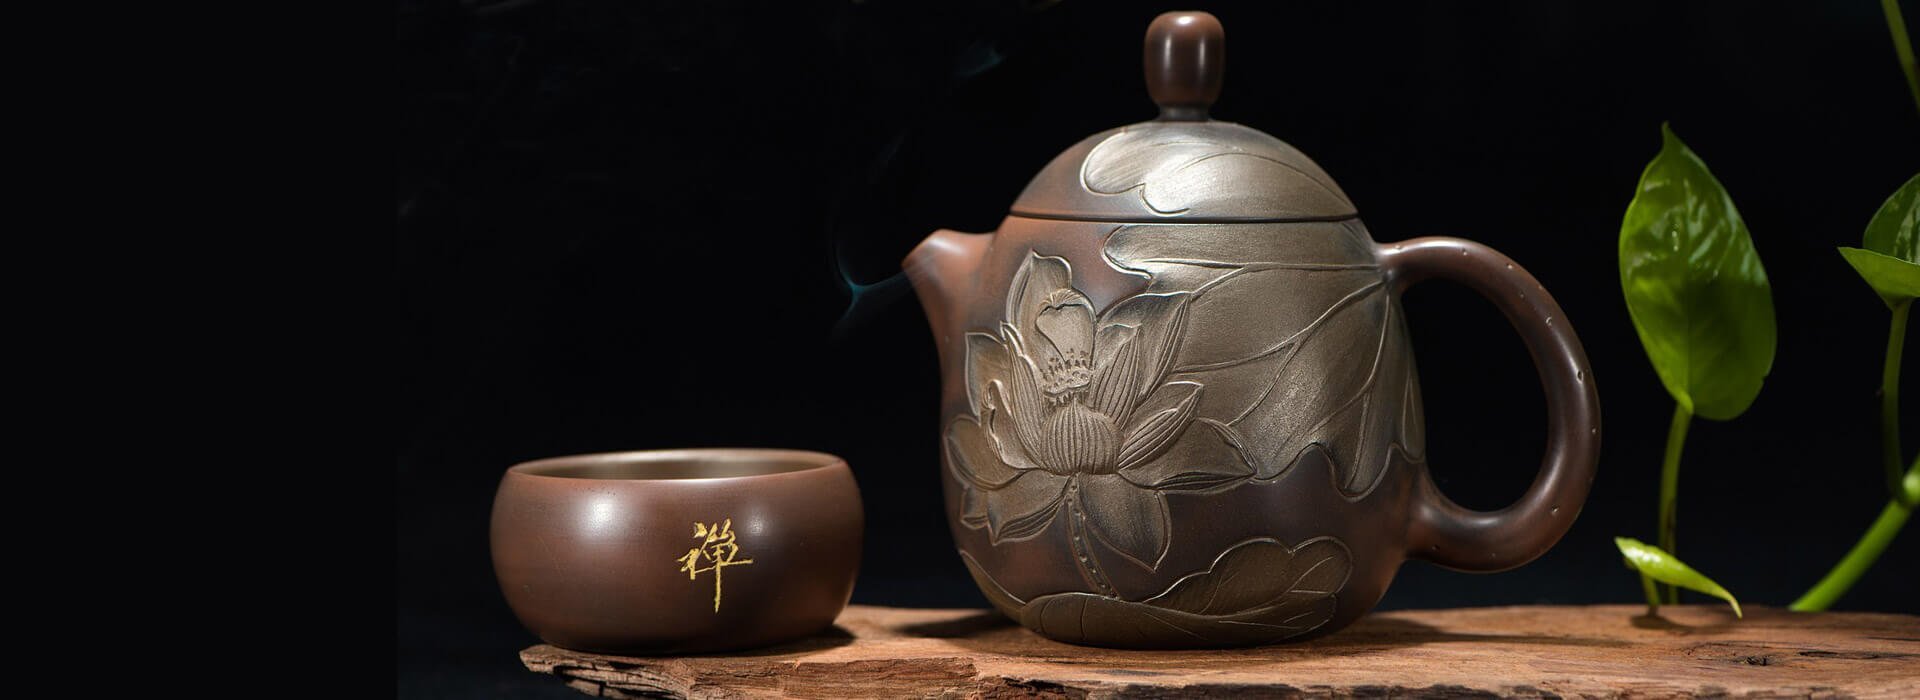 Slika prikazuje skodelico čaja in čajnik za banner pri članku oziroma blogu.